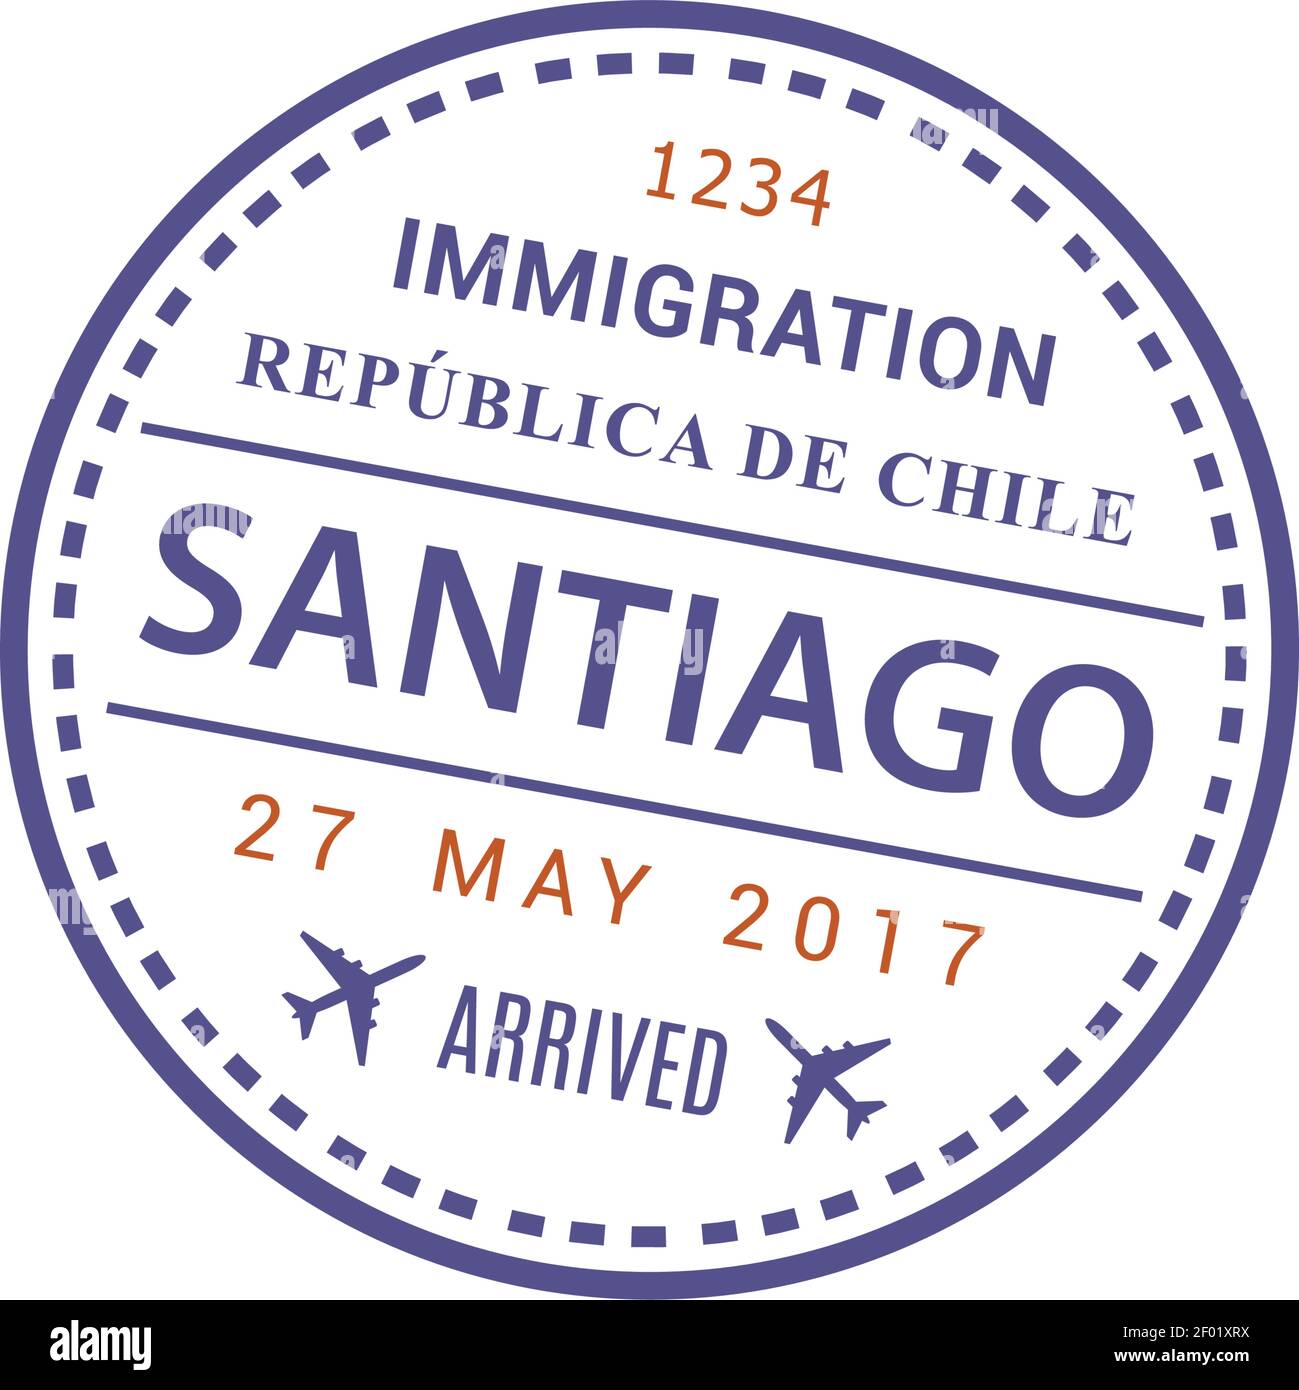 Visa d'arrivée à l'immigration Republica de Chili, aéroport international de Santiago, icône de timbre vecteur isolée Illustration de Vecteur